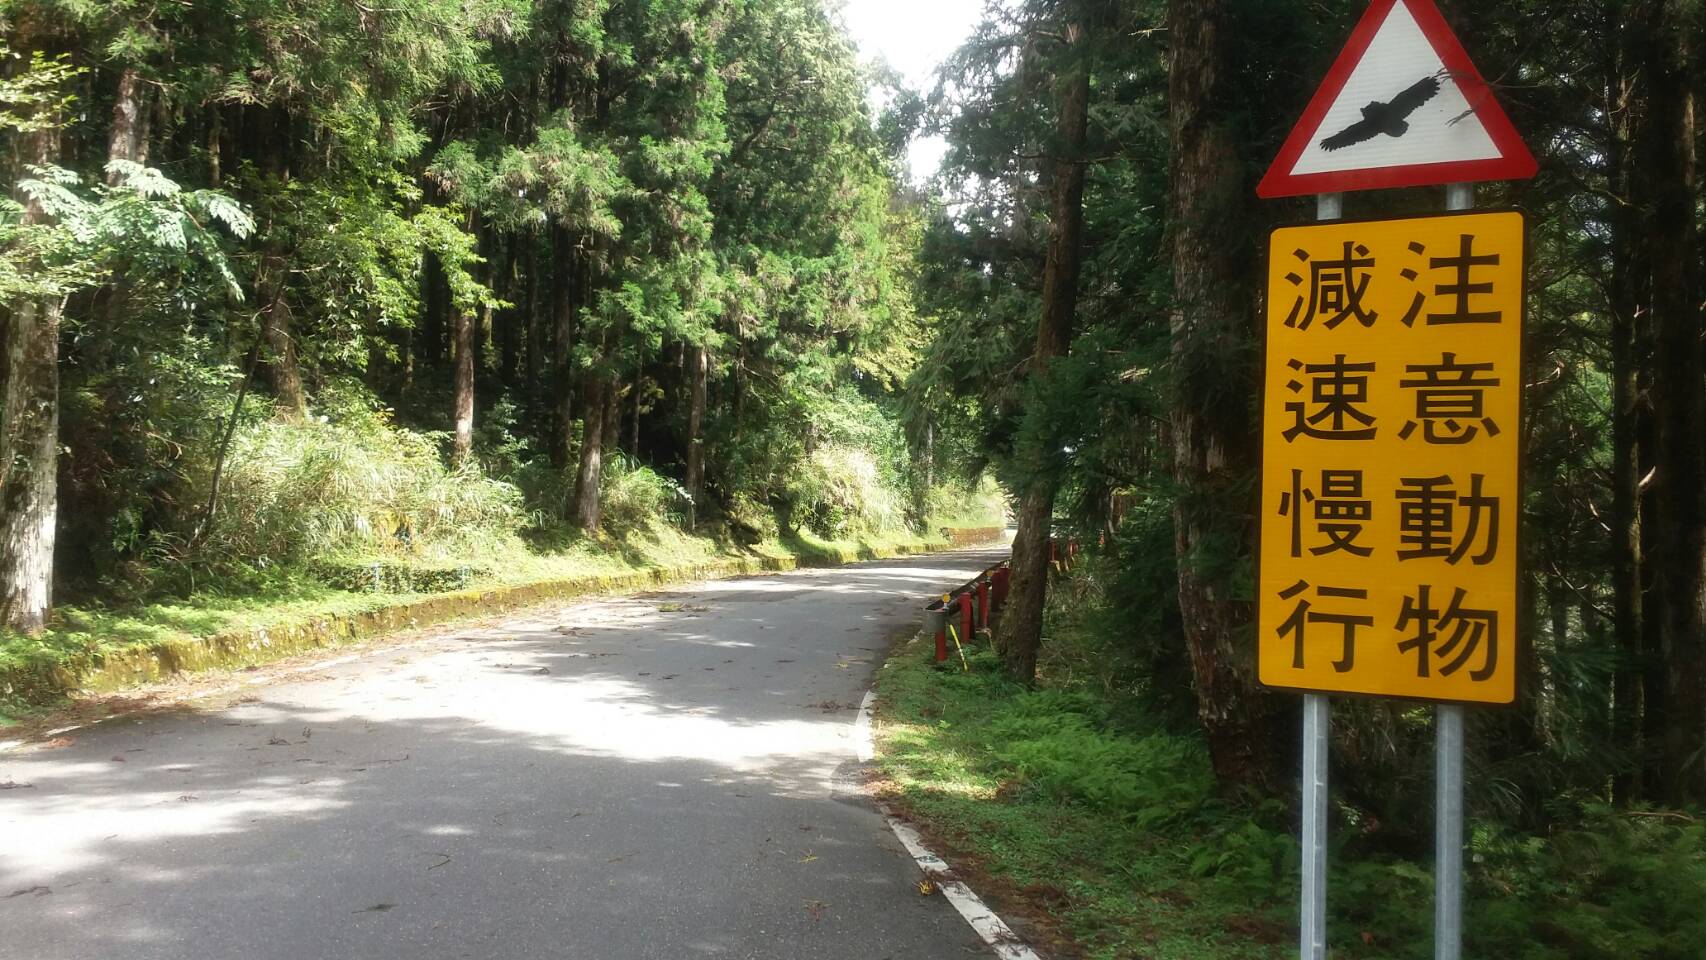 保護野生動物 預防路殺 太平山國家森林遊樂區設置注意動物出沒告示牌